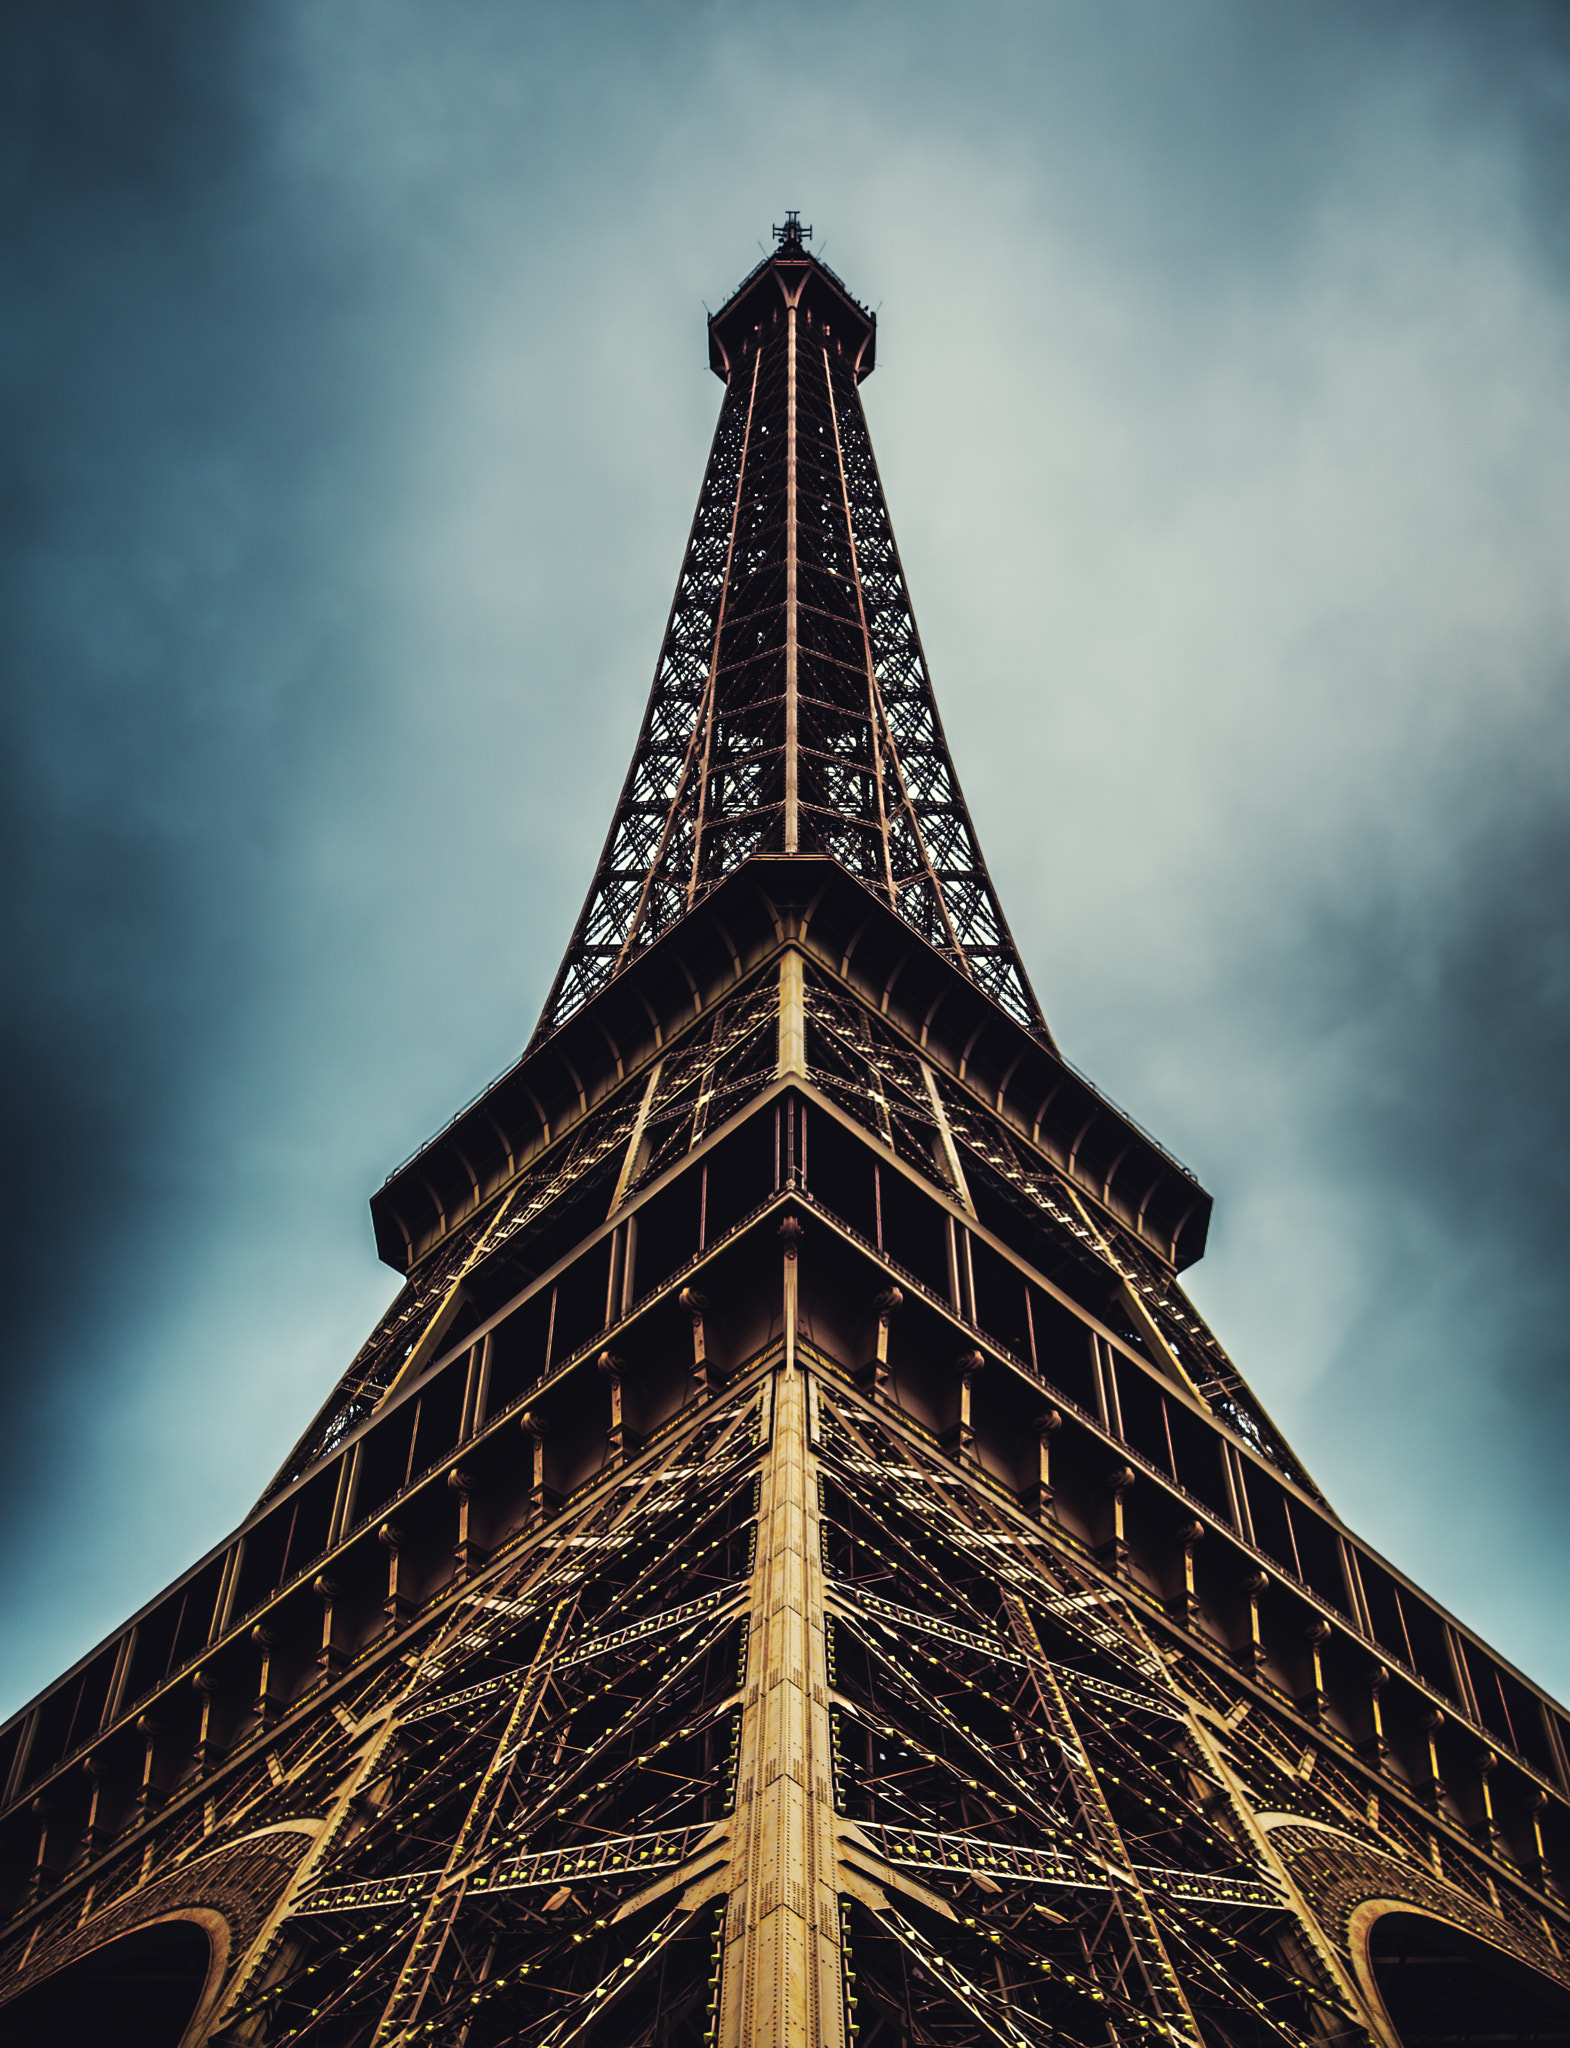 Sony SLT-A57 sample photo. Eiffel tower photography